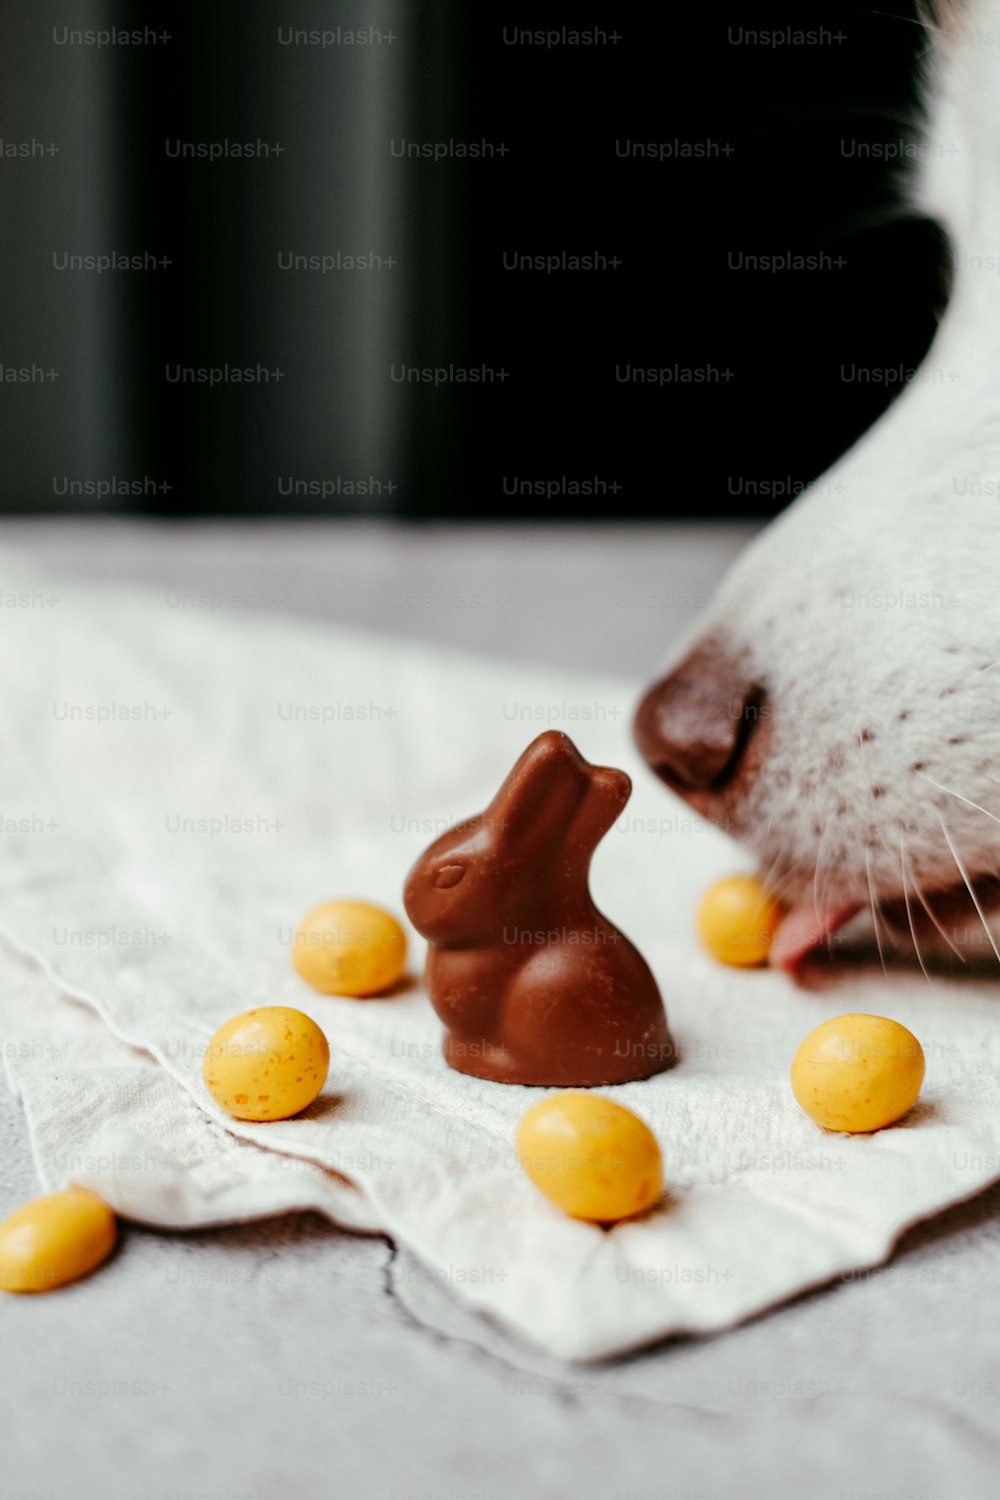 Un perro olfateando un conejito de chocolate en una servilleta